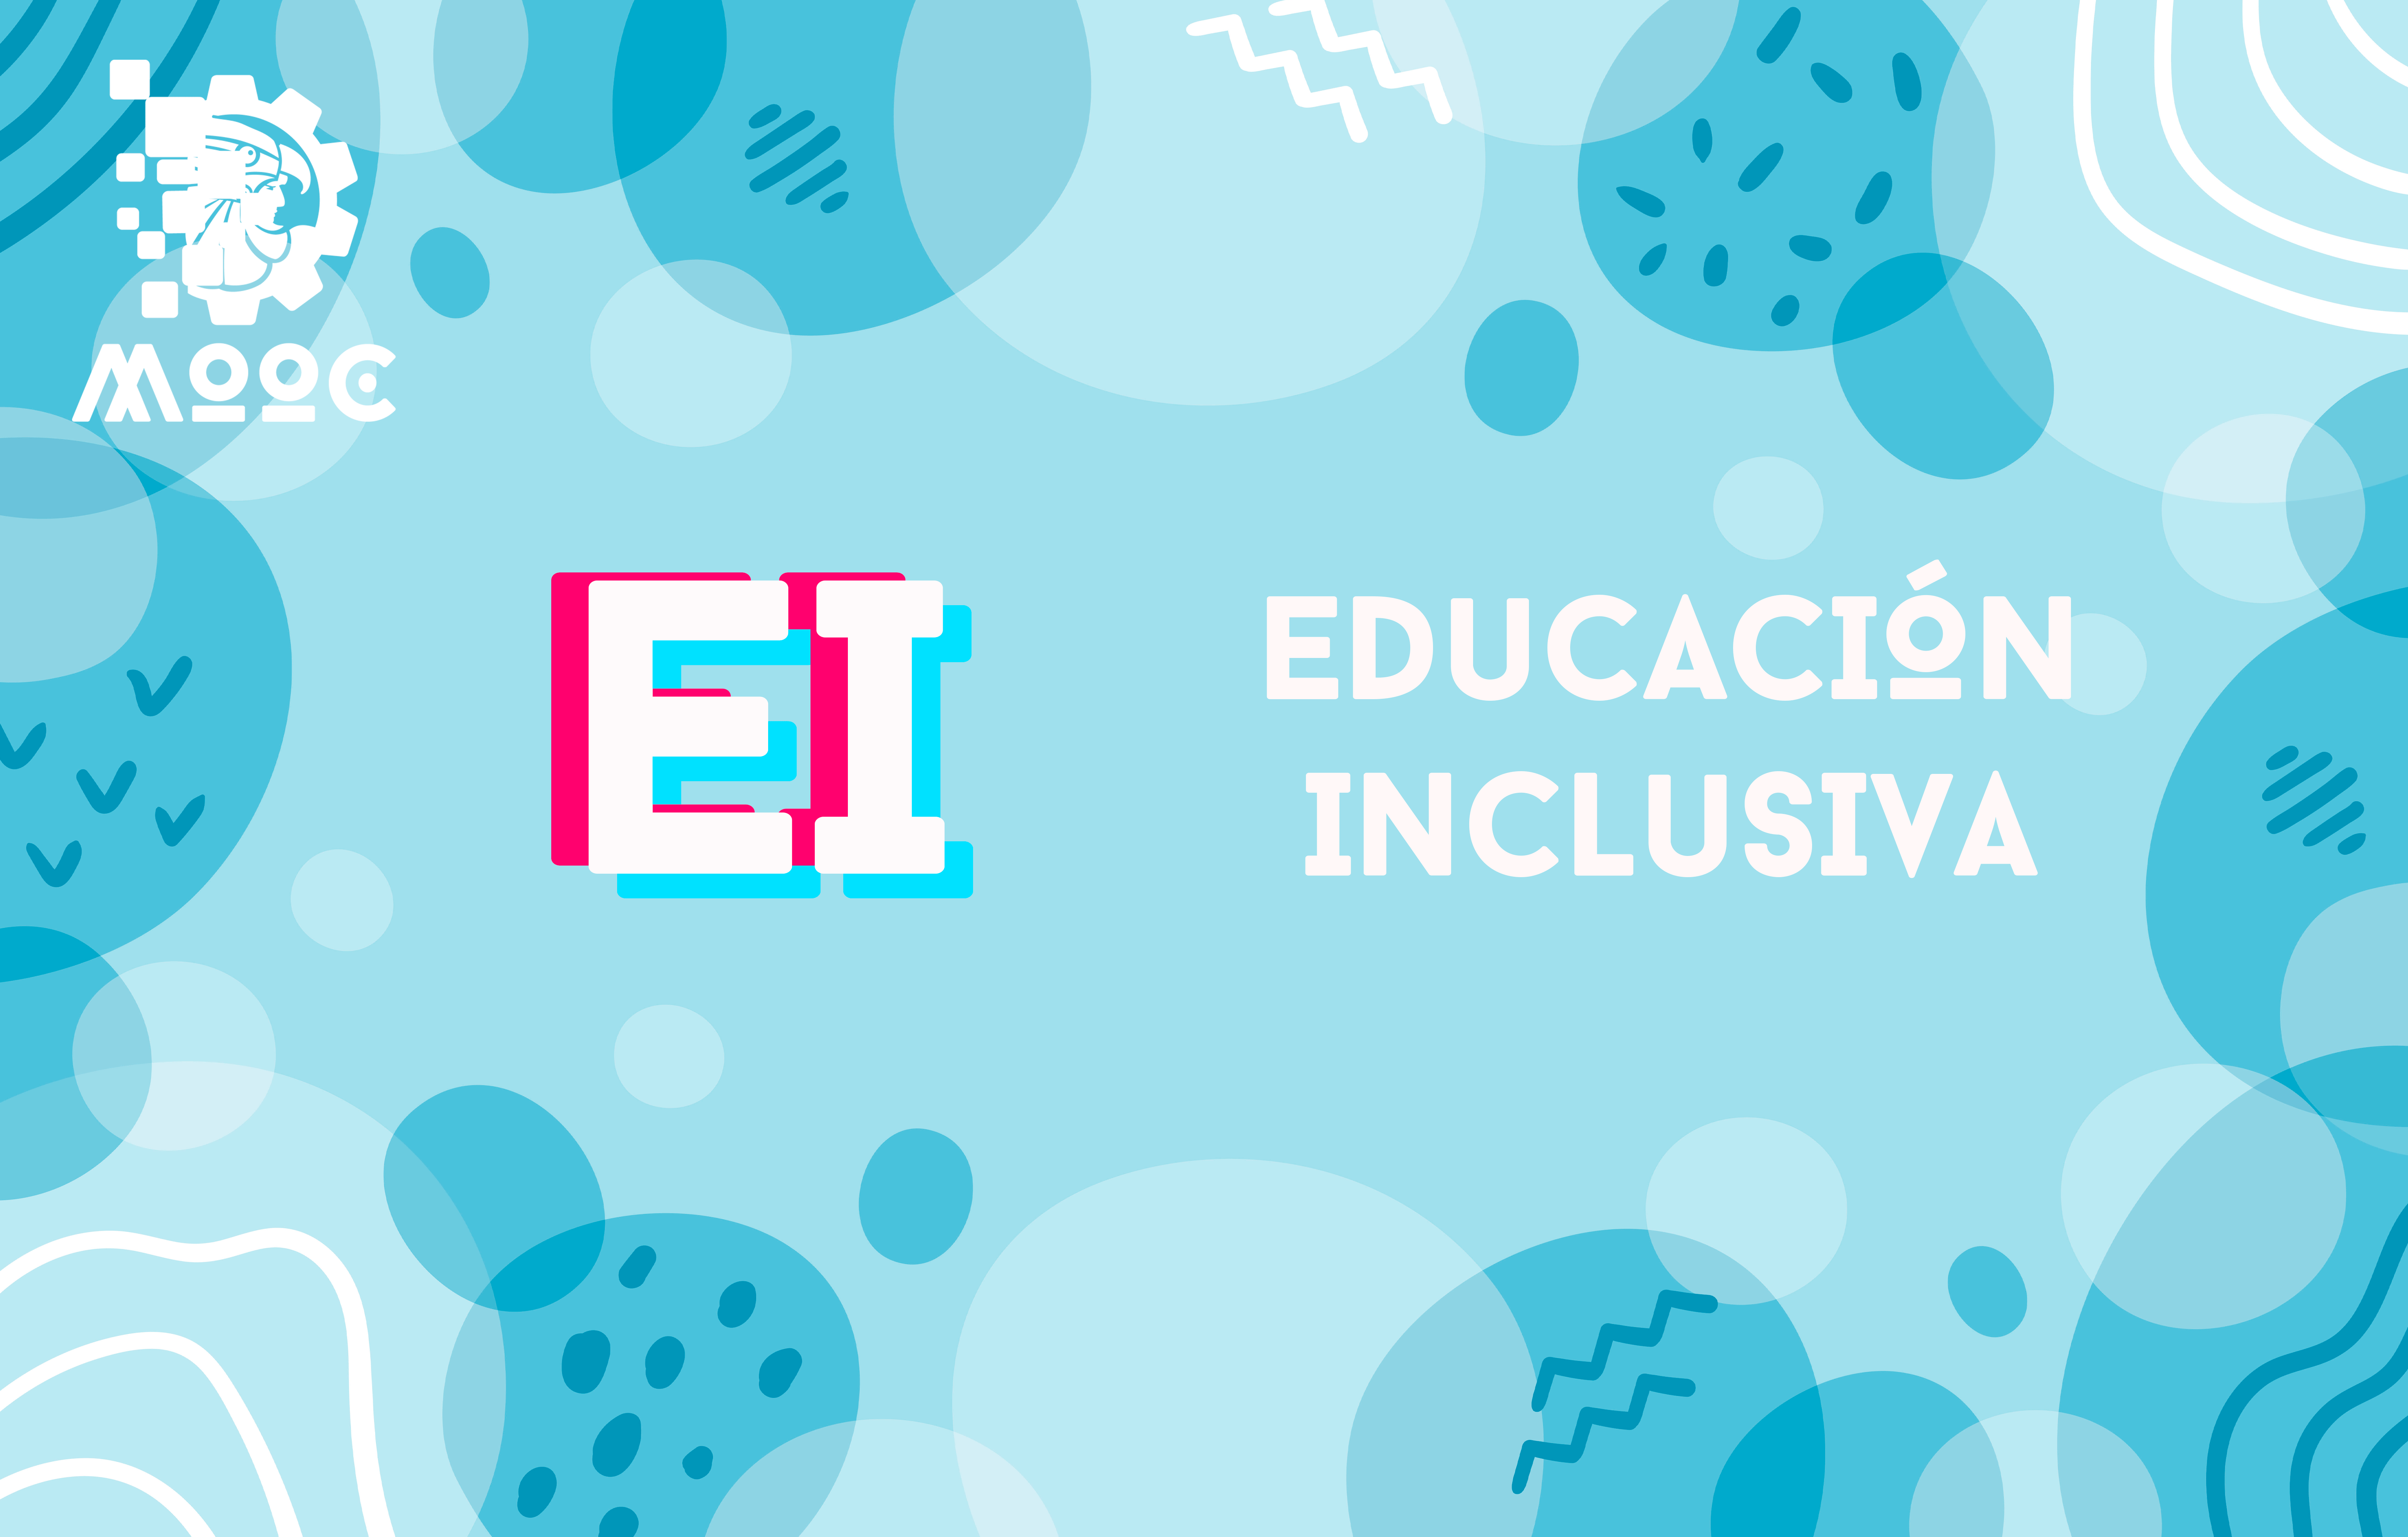 Educación Inclusiva EI01-001